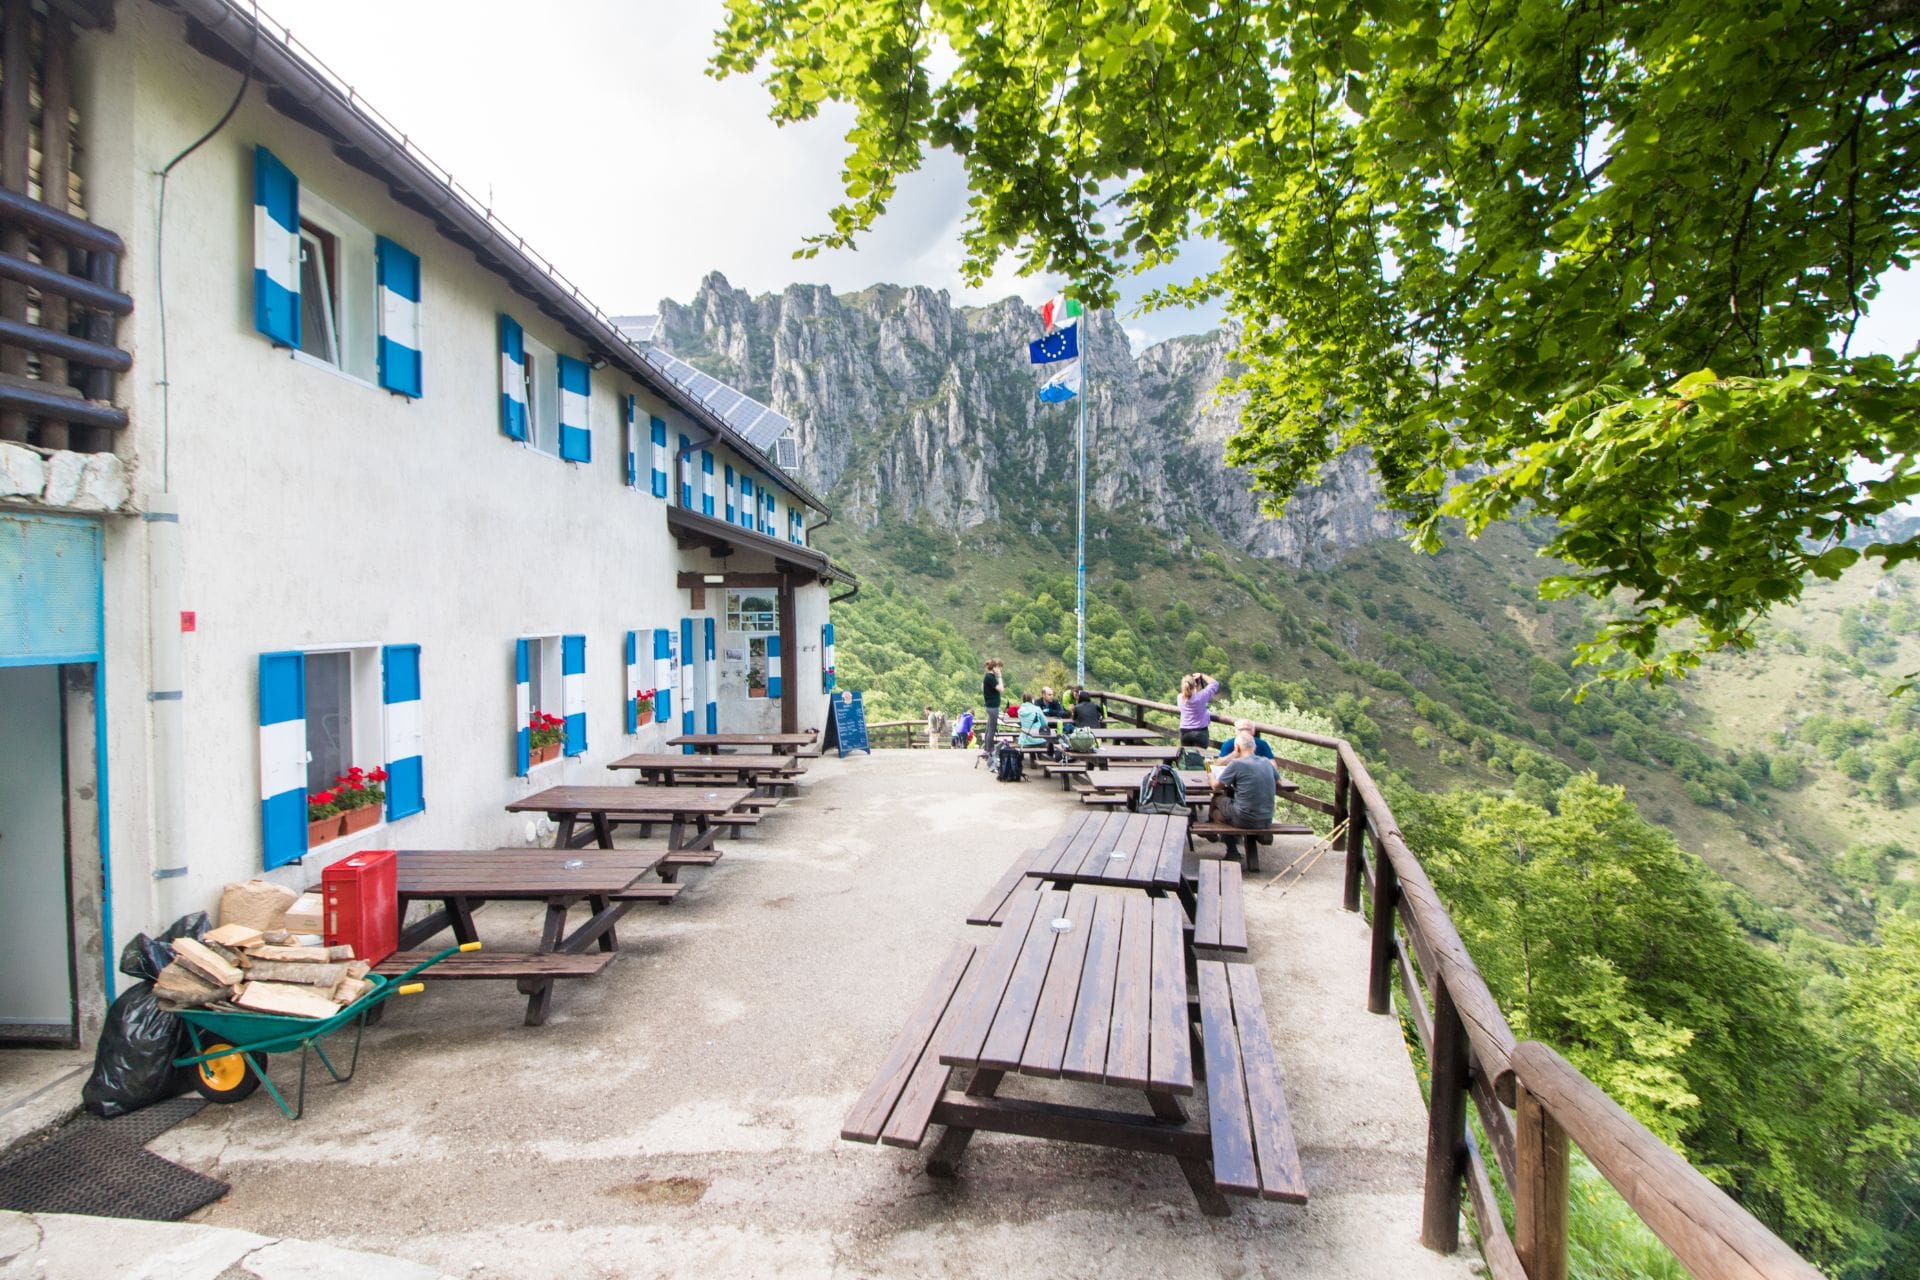 mountain-hut-in-the-italian-alps-dolomites-rifugio-pernici-valle-di-ledro-lago-di-ledro